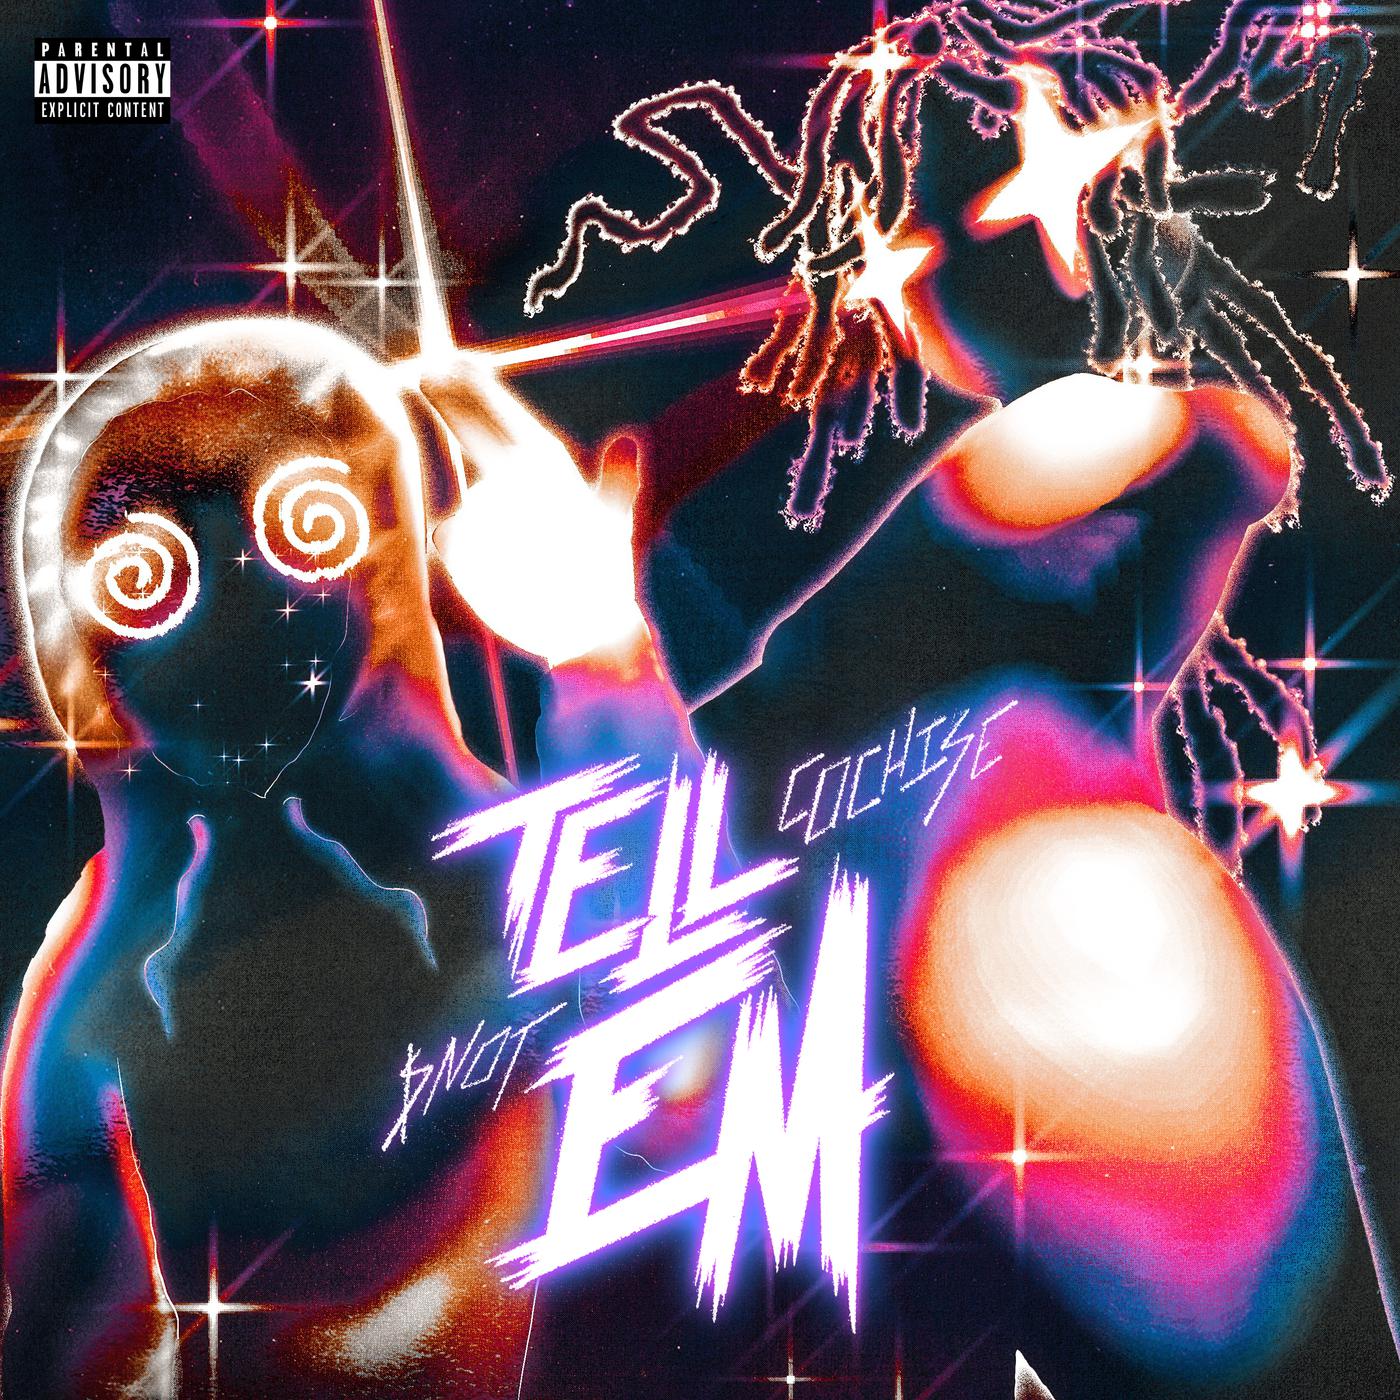 Tell Em歌词 歌手Cochise / $NOT-专辑Tell Em-单曲《Tell Em》LRC歌词下载